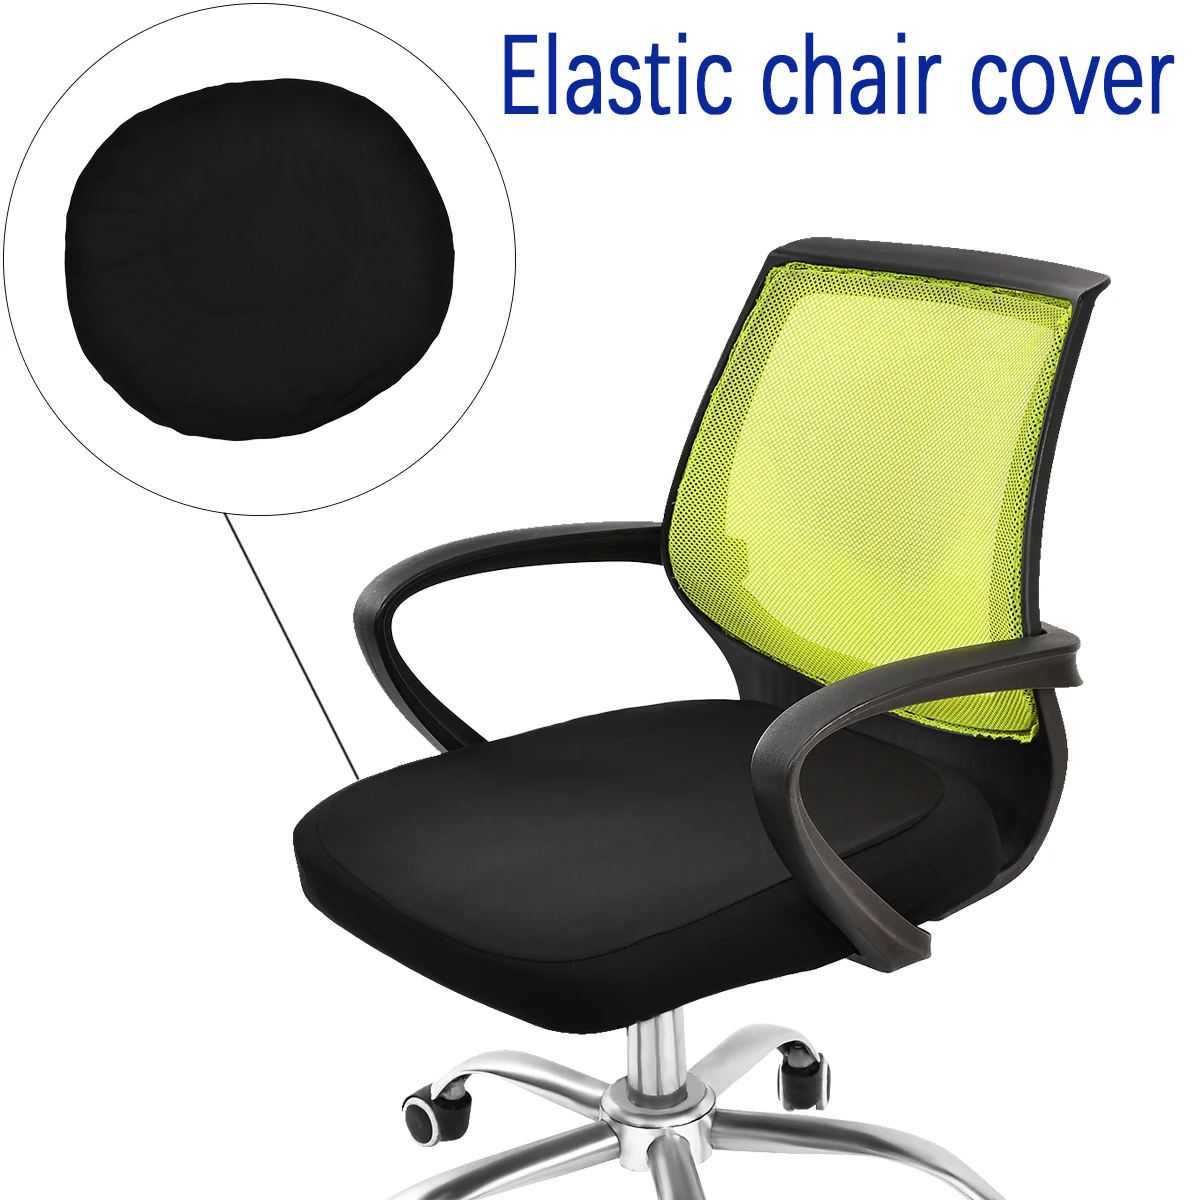 

Чехлы на стулья, мягкий чехол на стул, защитный чехол из телескопического материала, Съемный и моющийся, 45*50 см